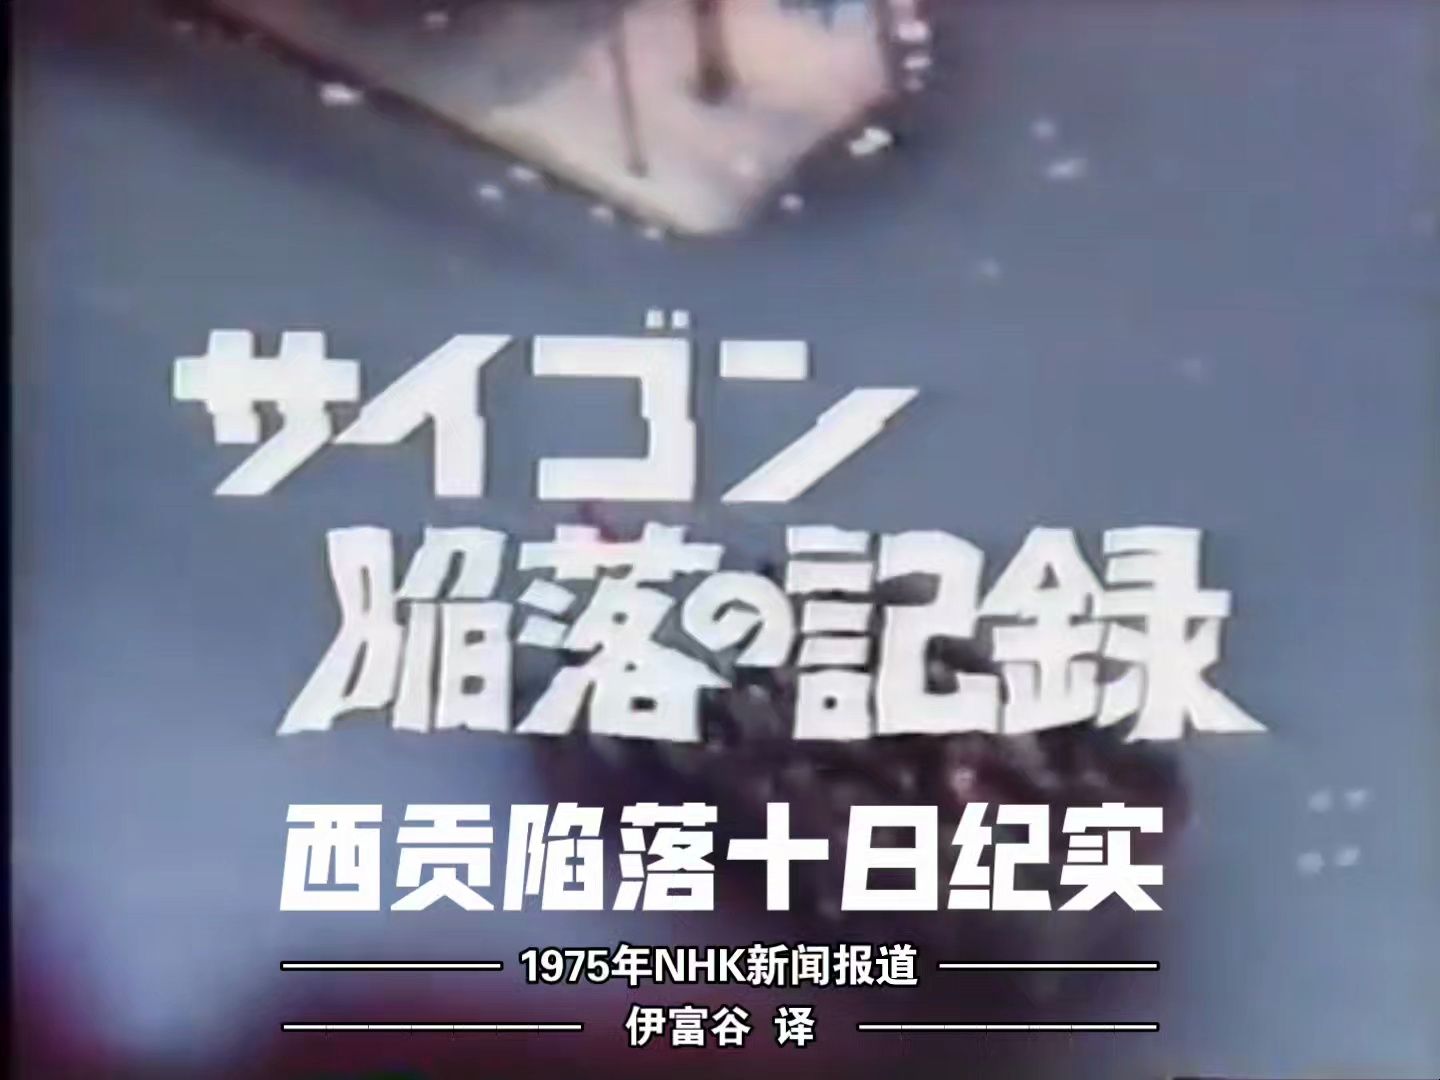 【中日双语】西贡陷落10日纪实 —— 1975年NHK新闻报道